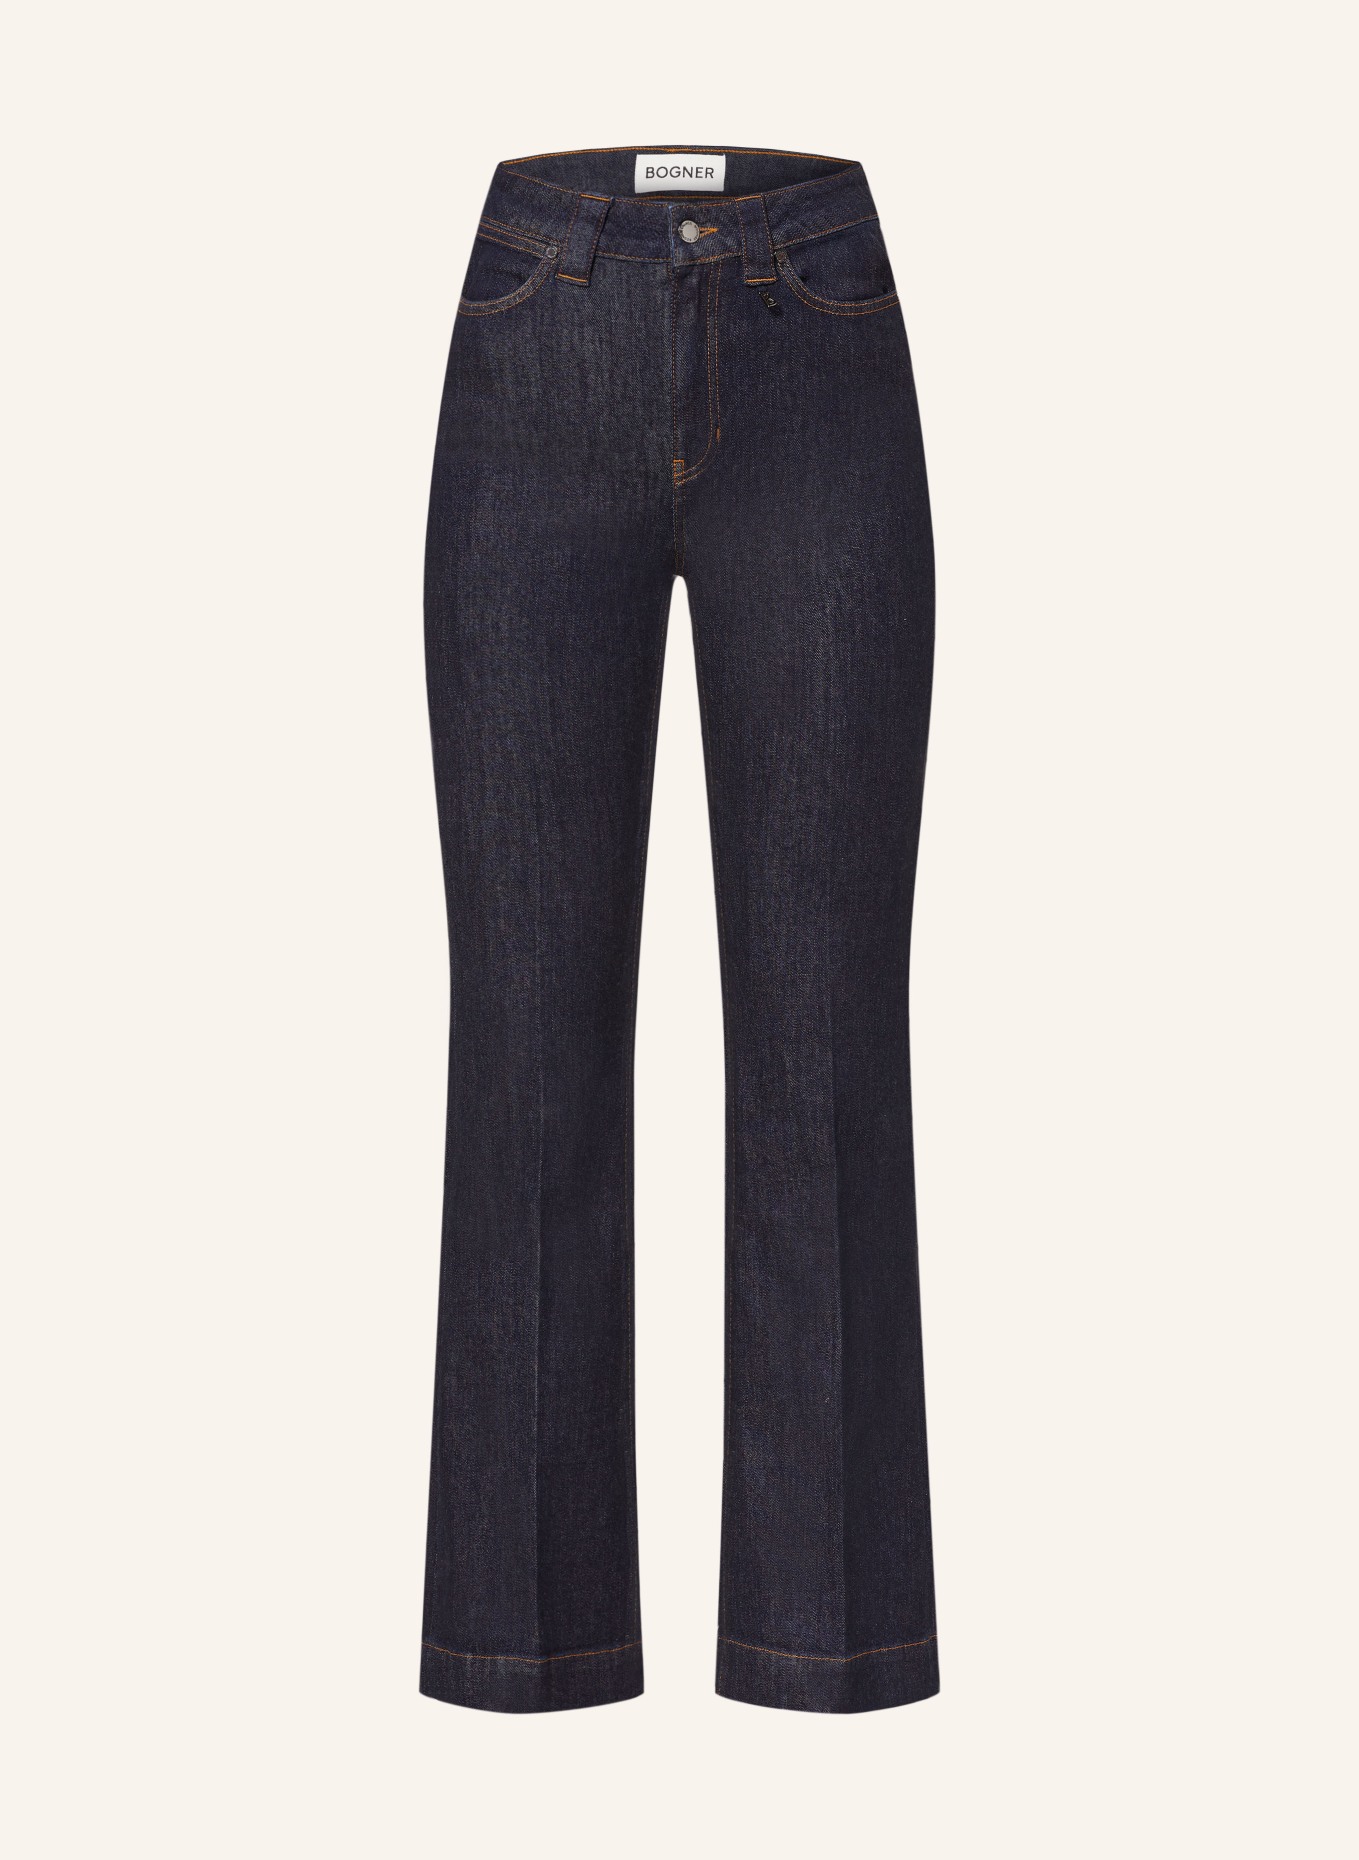 BOGNER Jeans DEVIN-1, Farbe: 439 denim rinse (Bild 1)